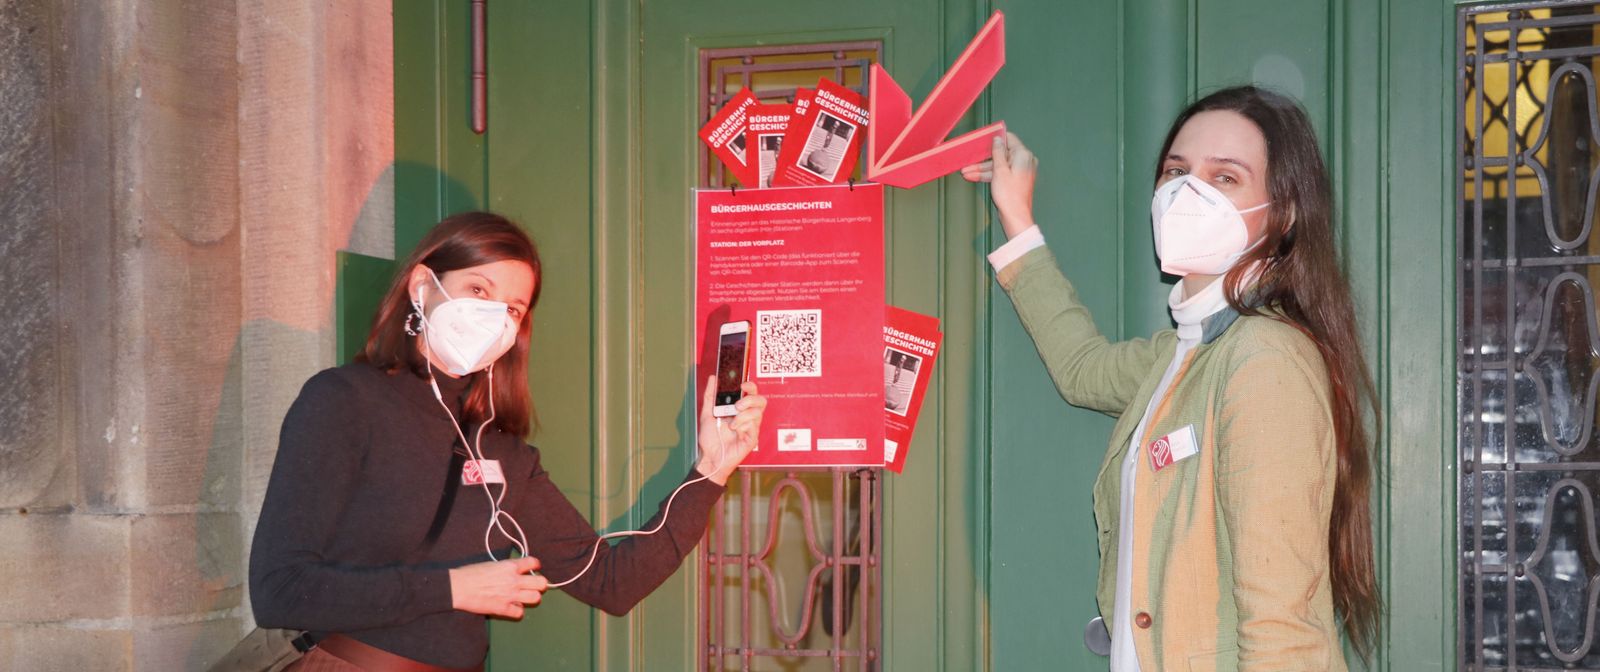 Zwei Personen mit Atemschutzmasken stehen vor einem grünen Tor und zeigen mit einem Smartphone und einem roten Pfeil auf ein rotes Plakat, auf dem ein QR-Code zu sehen ist. 